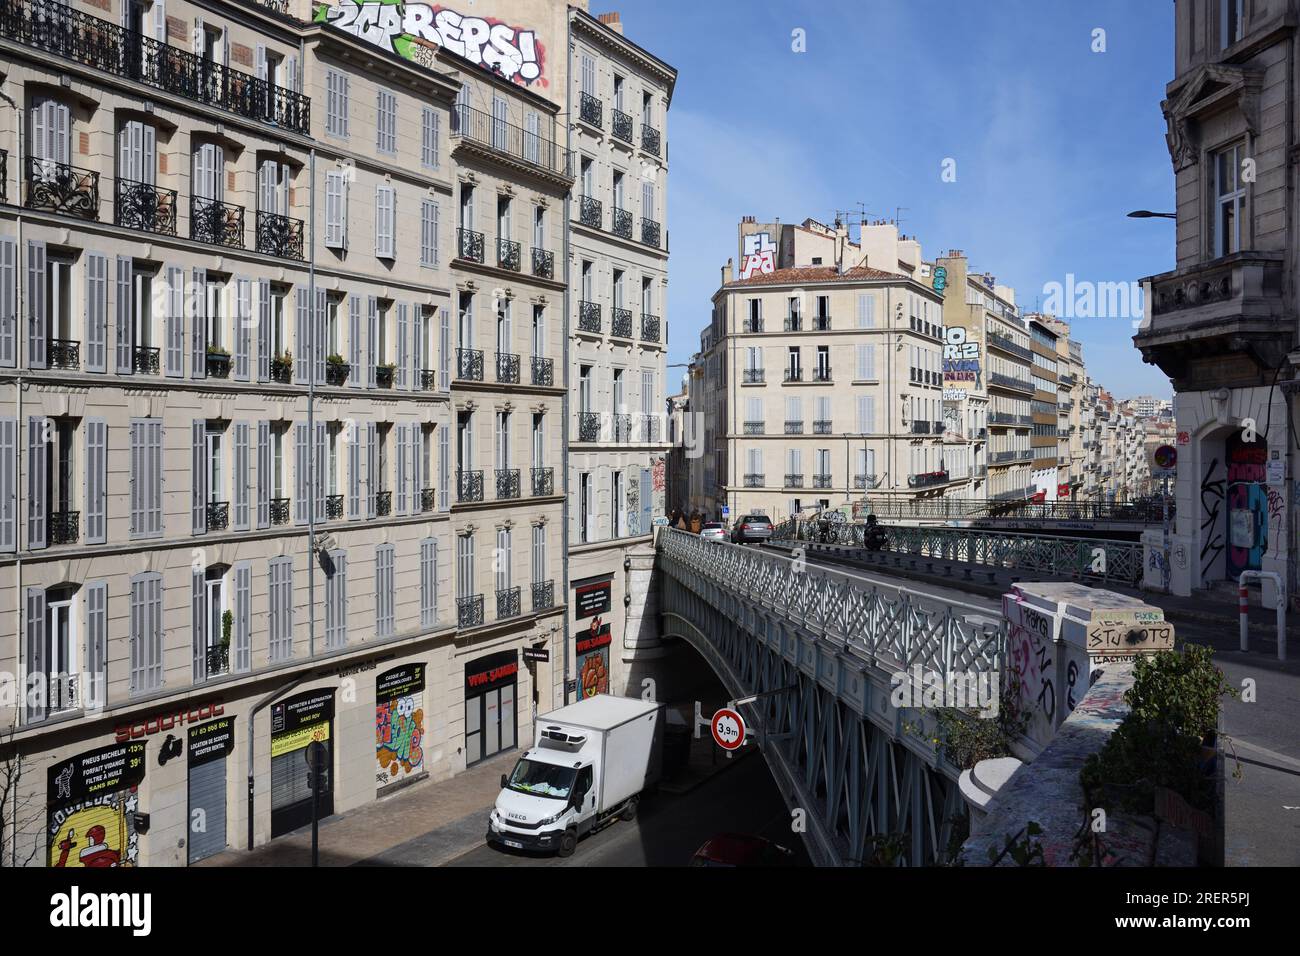 Haussmann-style Apartment Buildings & Bridge over the Cours Lieutaud, a main Boulevard or Avenue between Noailles & La Plaine Marseille France Stock Photo